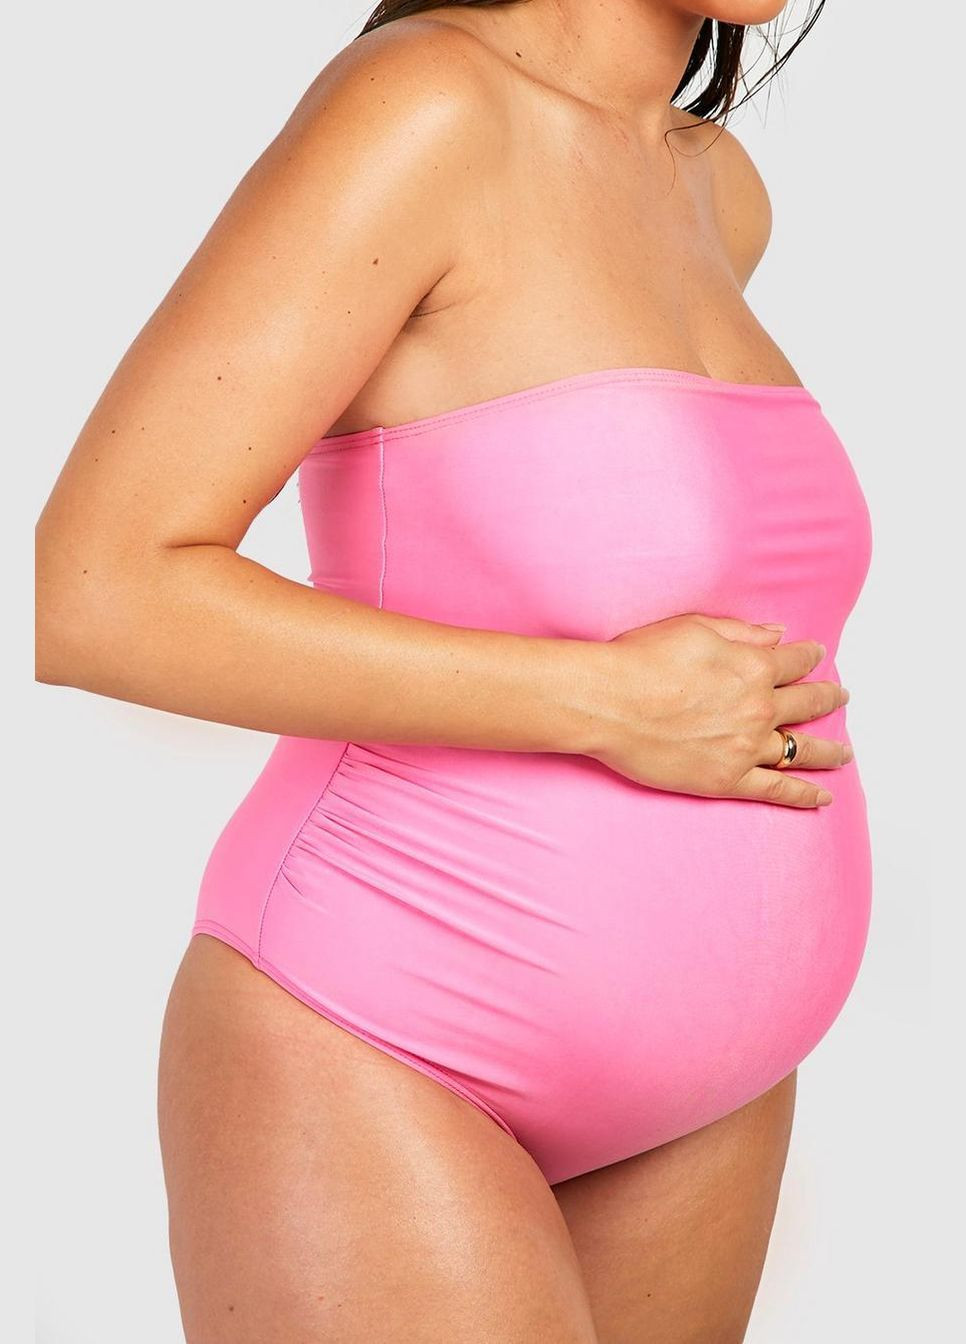 Розовый летний купальник слитный для беременных Boohoo